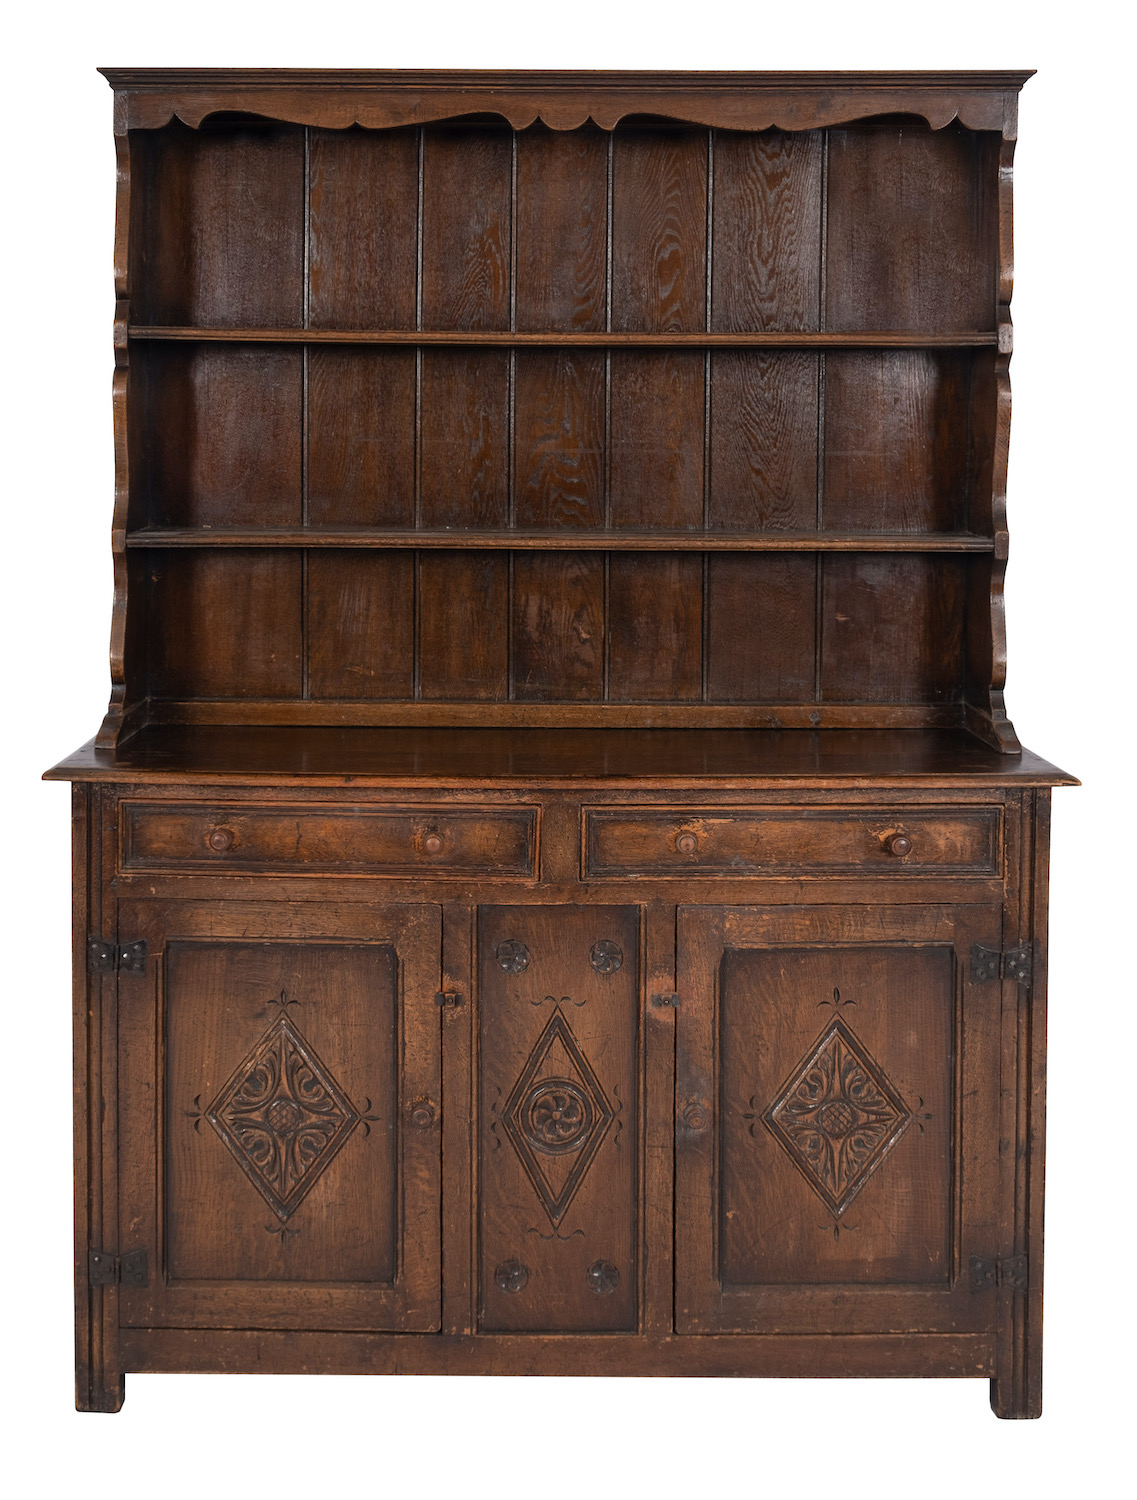 An oak dresser in late 17th century taste,